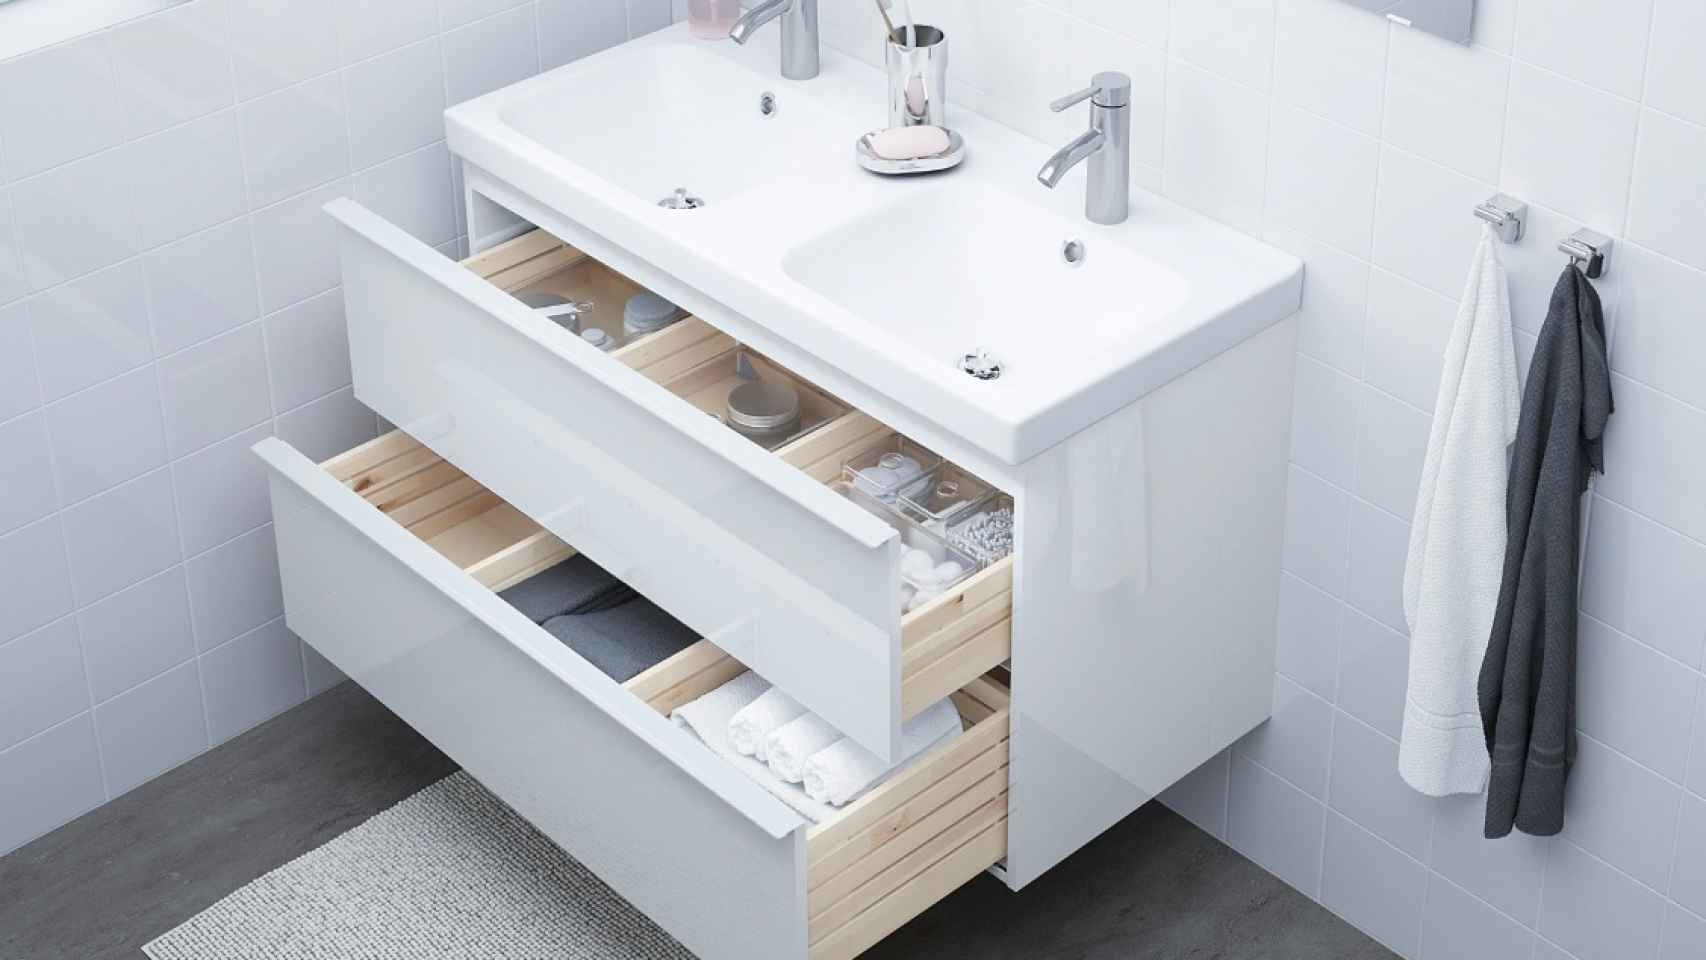 Ikea indemnizará al cliente al que un lavabo Odensvik amputó un dedo